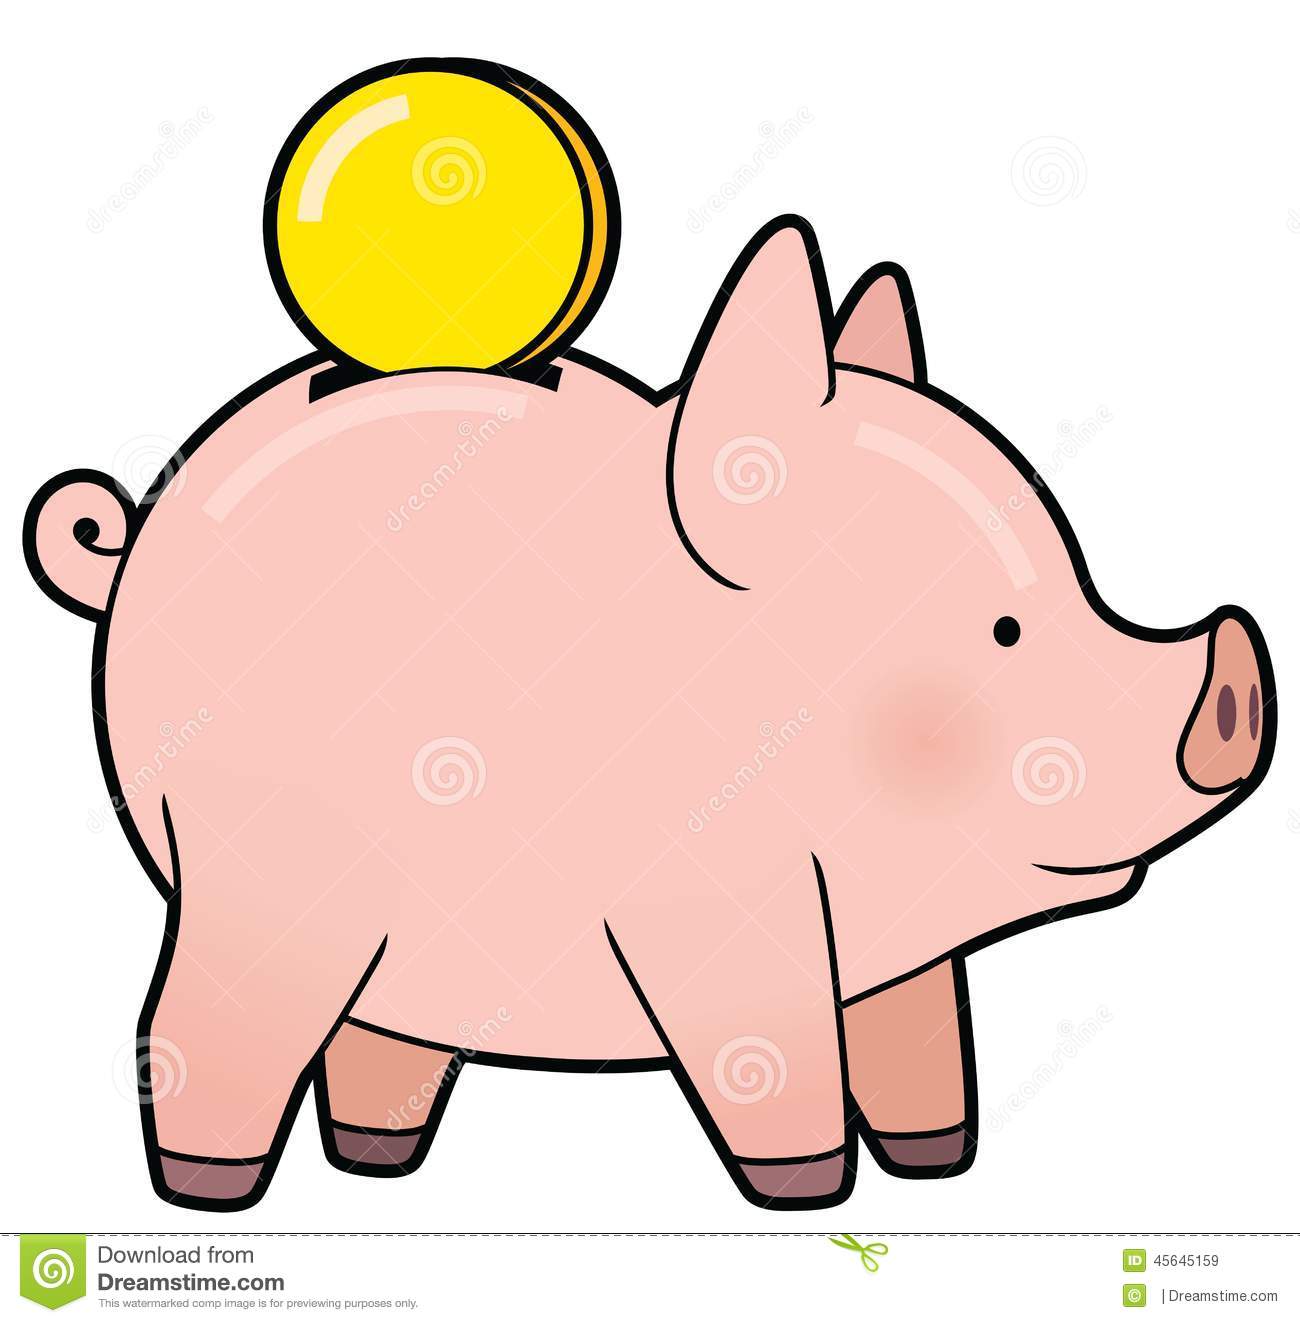 Cartoon Cute Piggy Bank With Golden Coin Vector Stock Vector   Image    